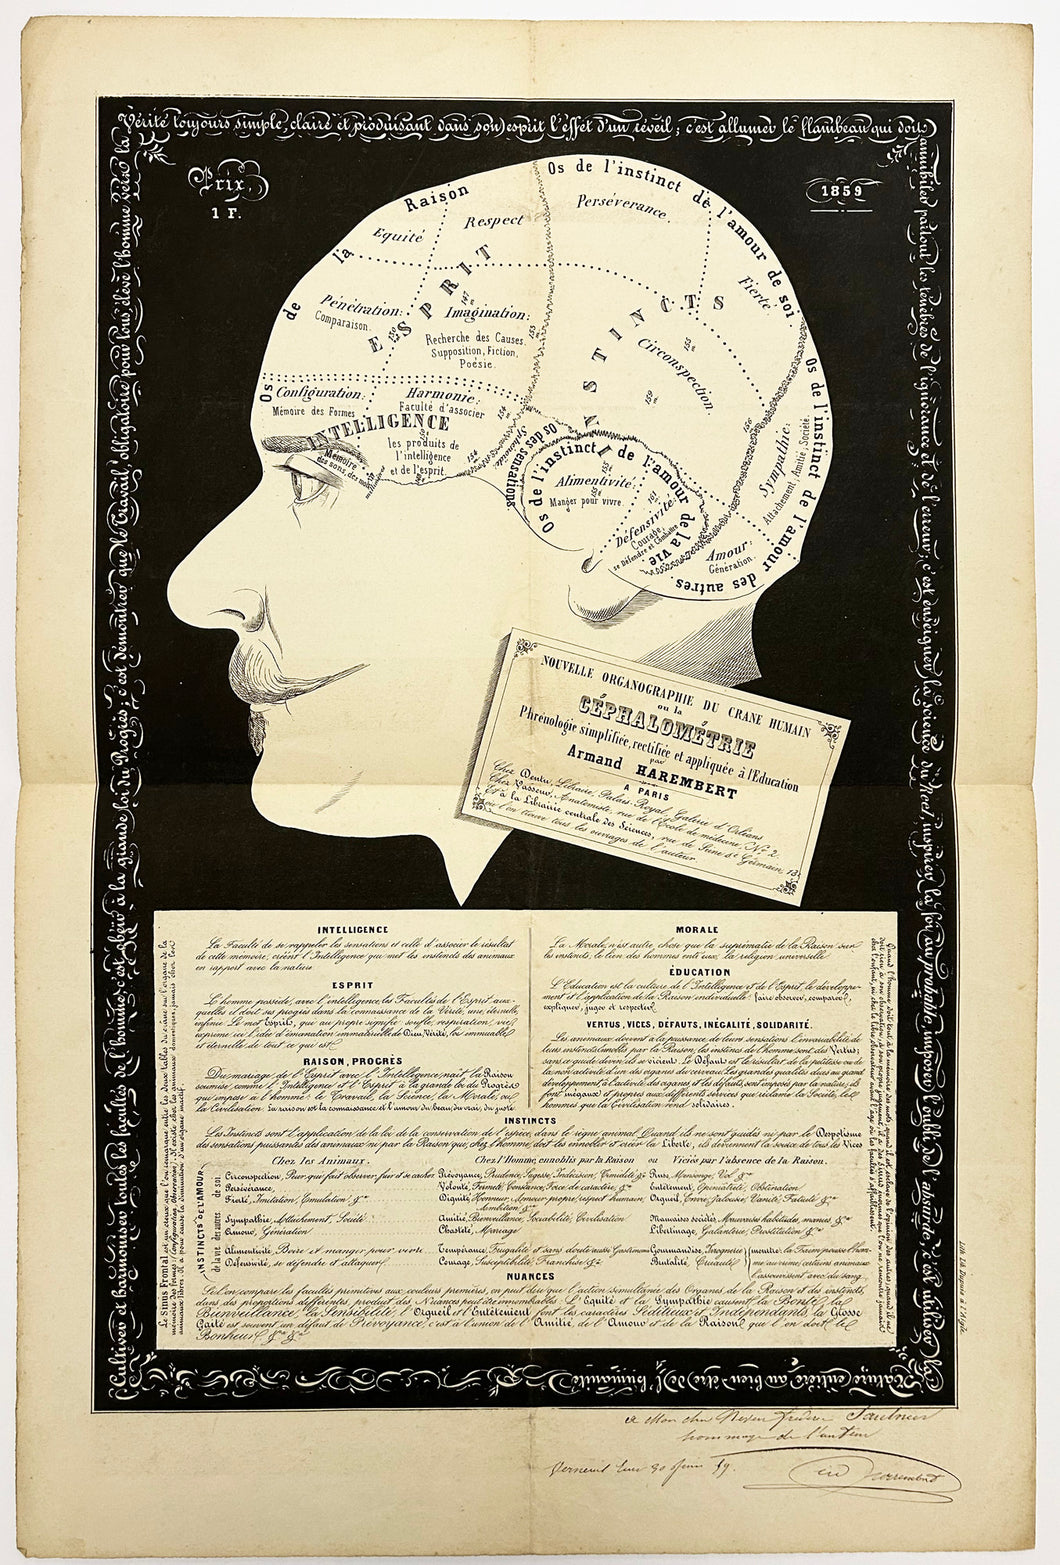 Nouvelle organographie du crâne humain ou La Céphalométrie. Phrénologie simplifiée, rectifiée et appliquée à l'Education, par Armand Harembert. 1859.